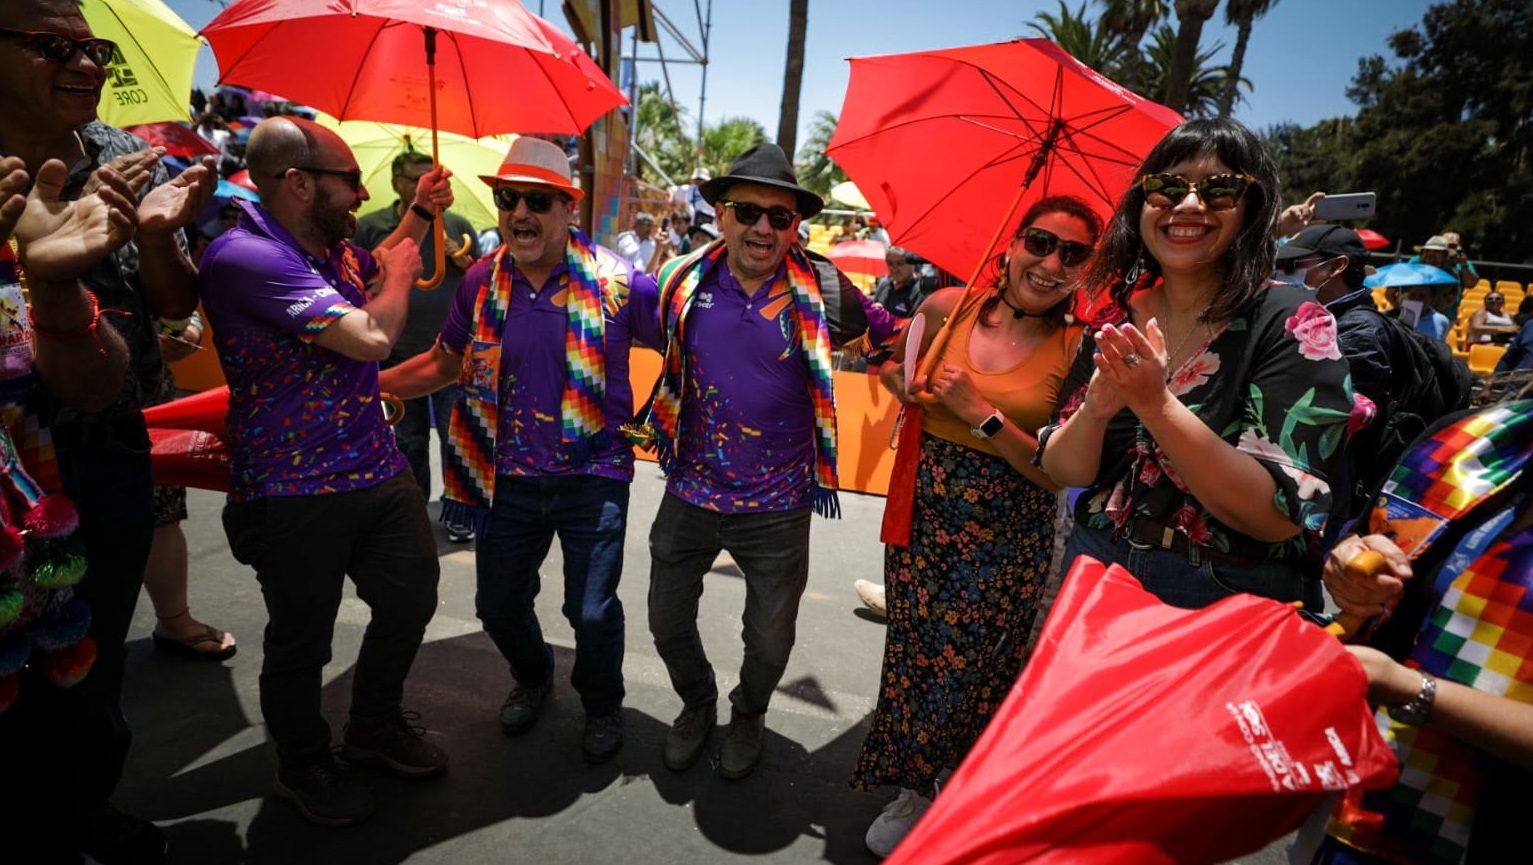 Poleras del Carnaval con material reciclado causaron furor en Arica